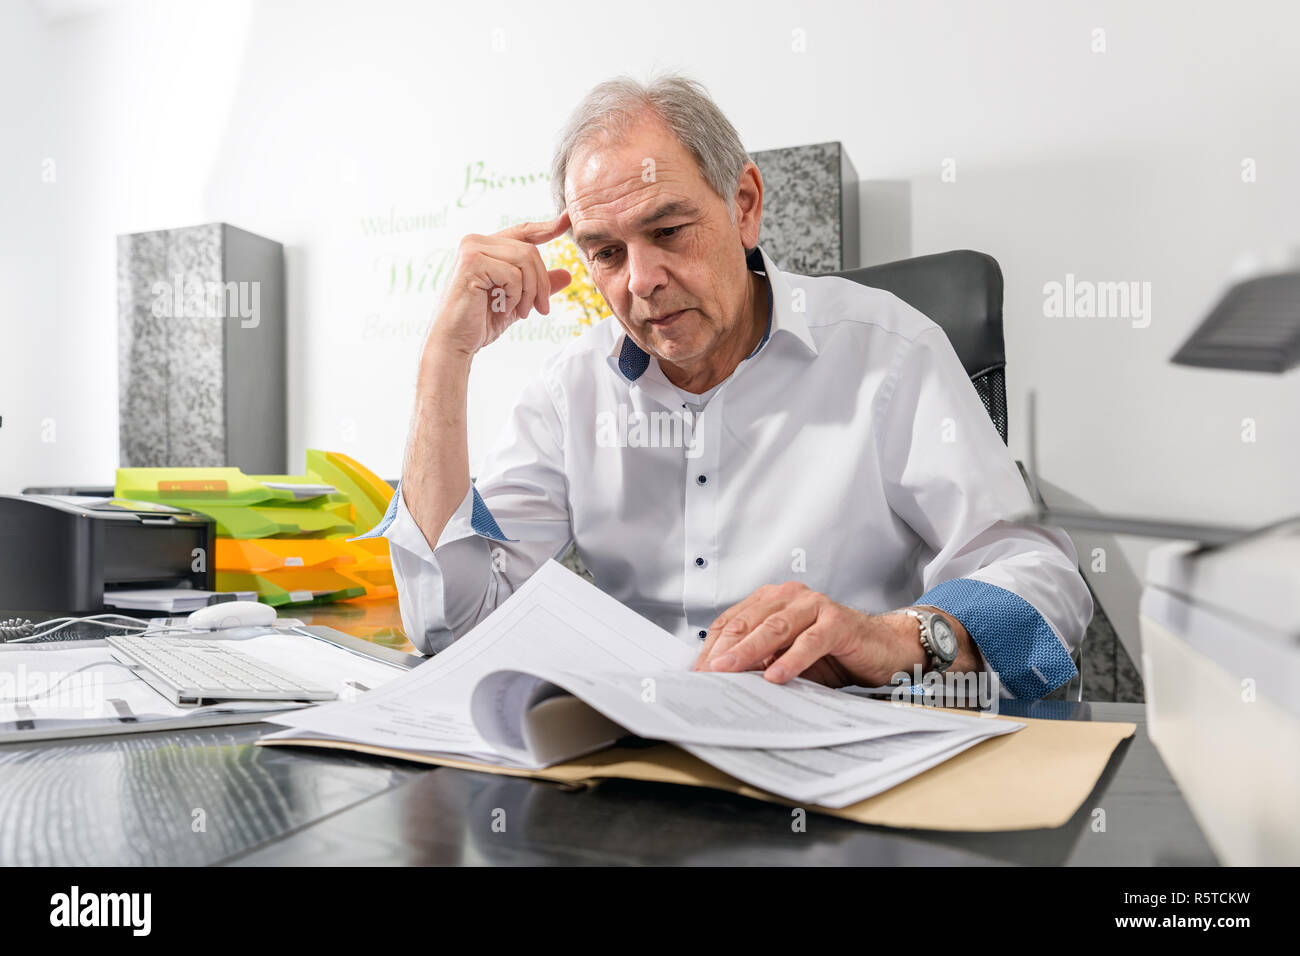 Un homme âgé avec une chemise blanche est assis à un bureau Banque D'Images